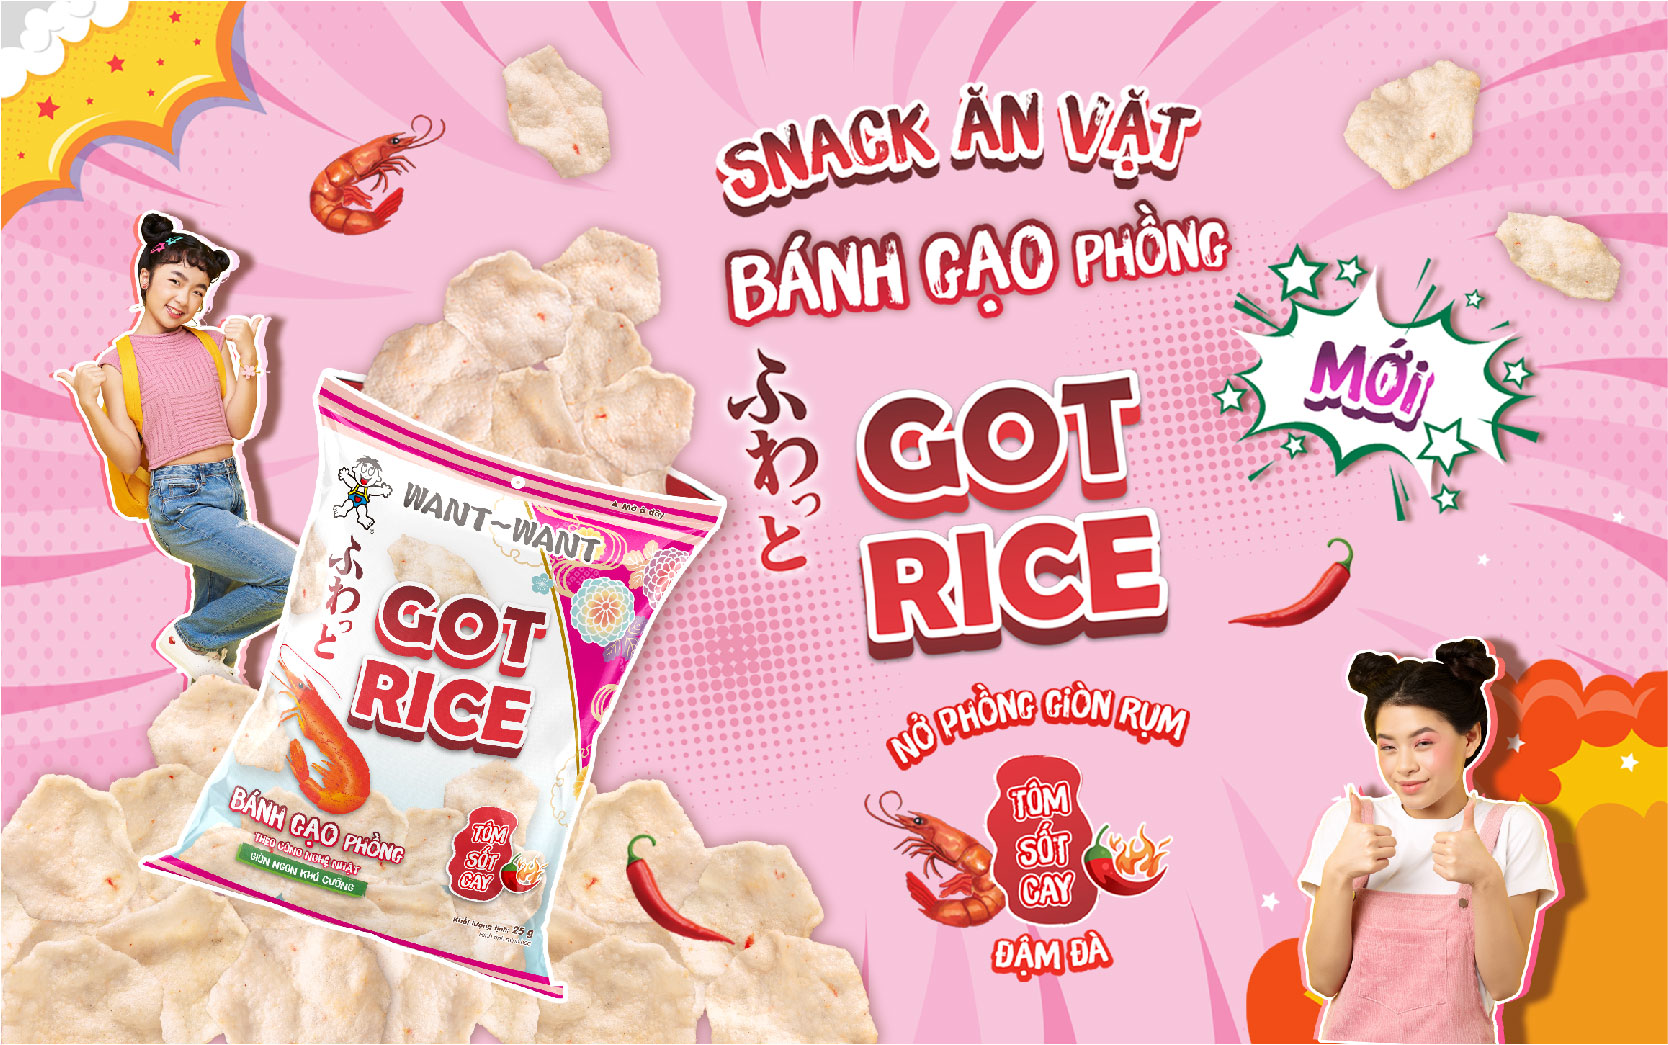 Want Want ra mắt dòng bánh ăn vặt mới: Snack gạo phồng Got Rice vị tôm sốt cay đậm đà